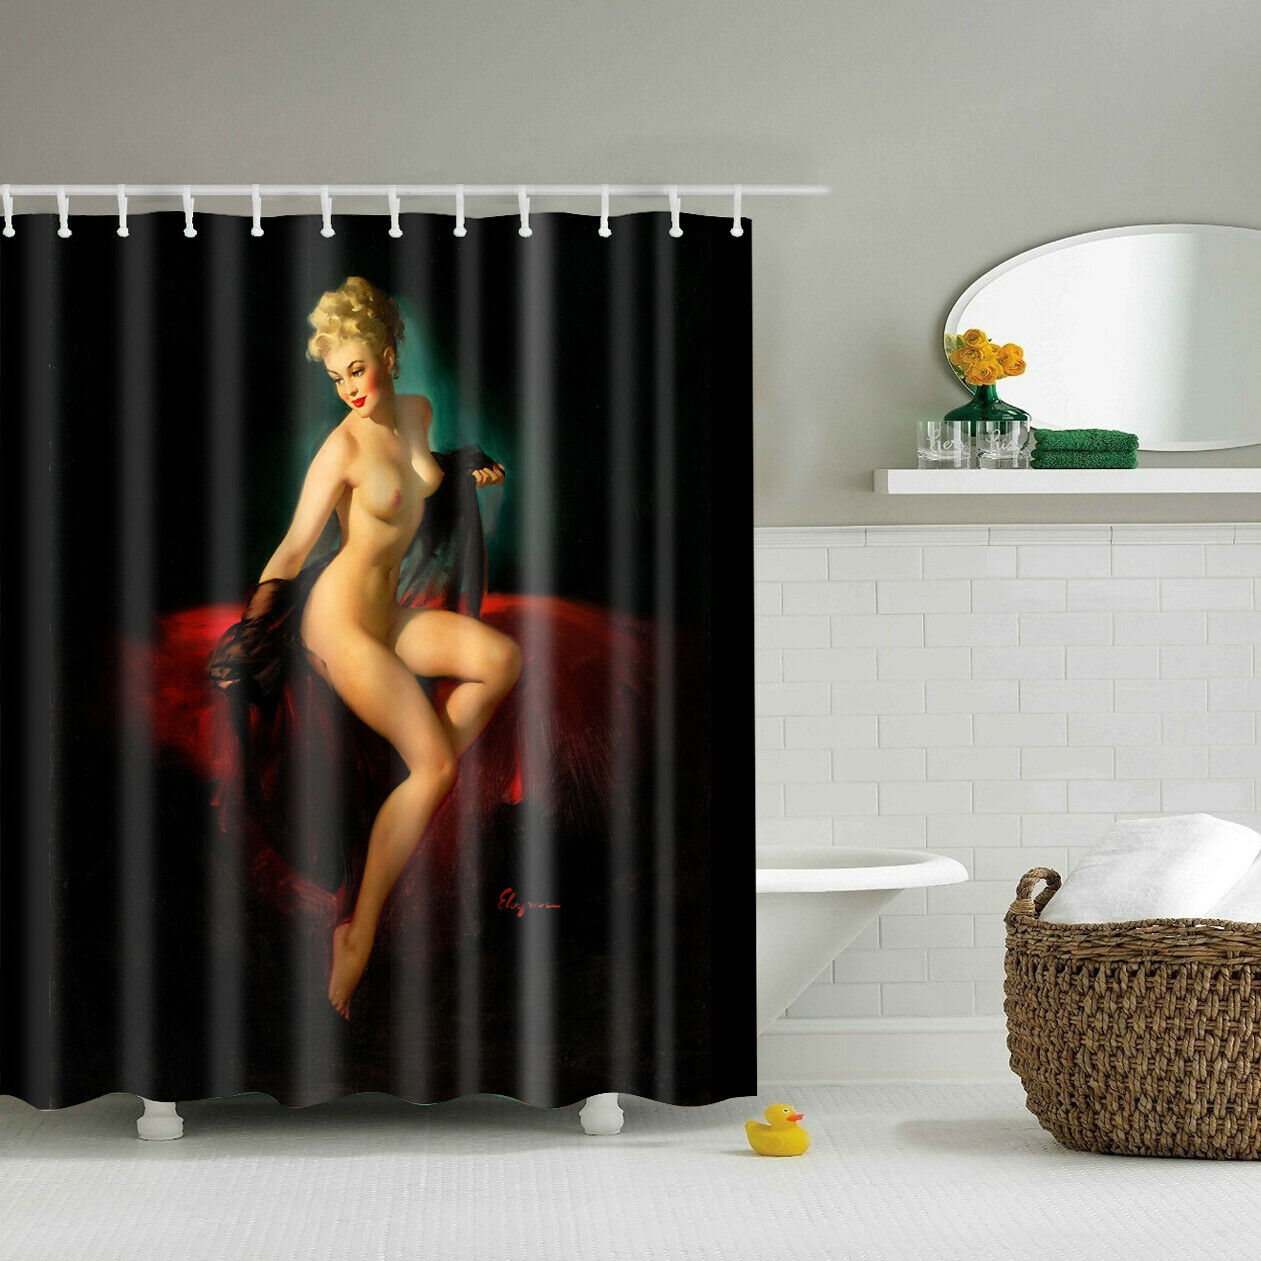 Lady sprchový závěs 180 x 180 cm